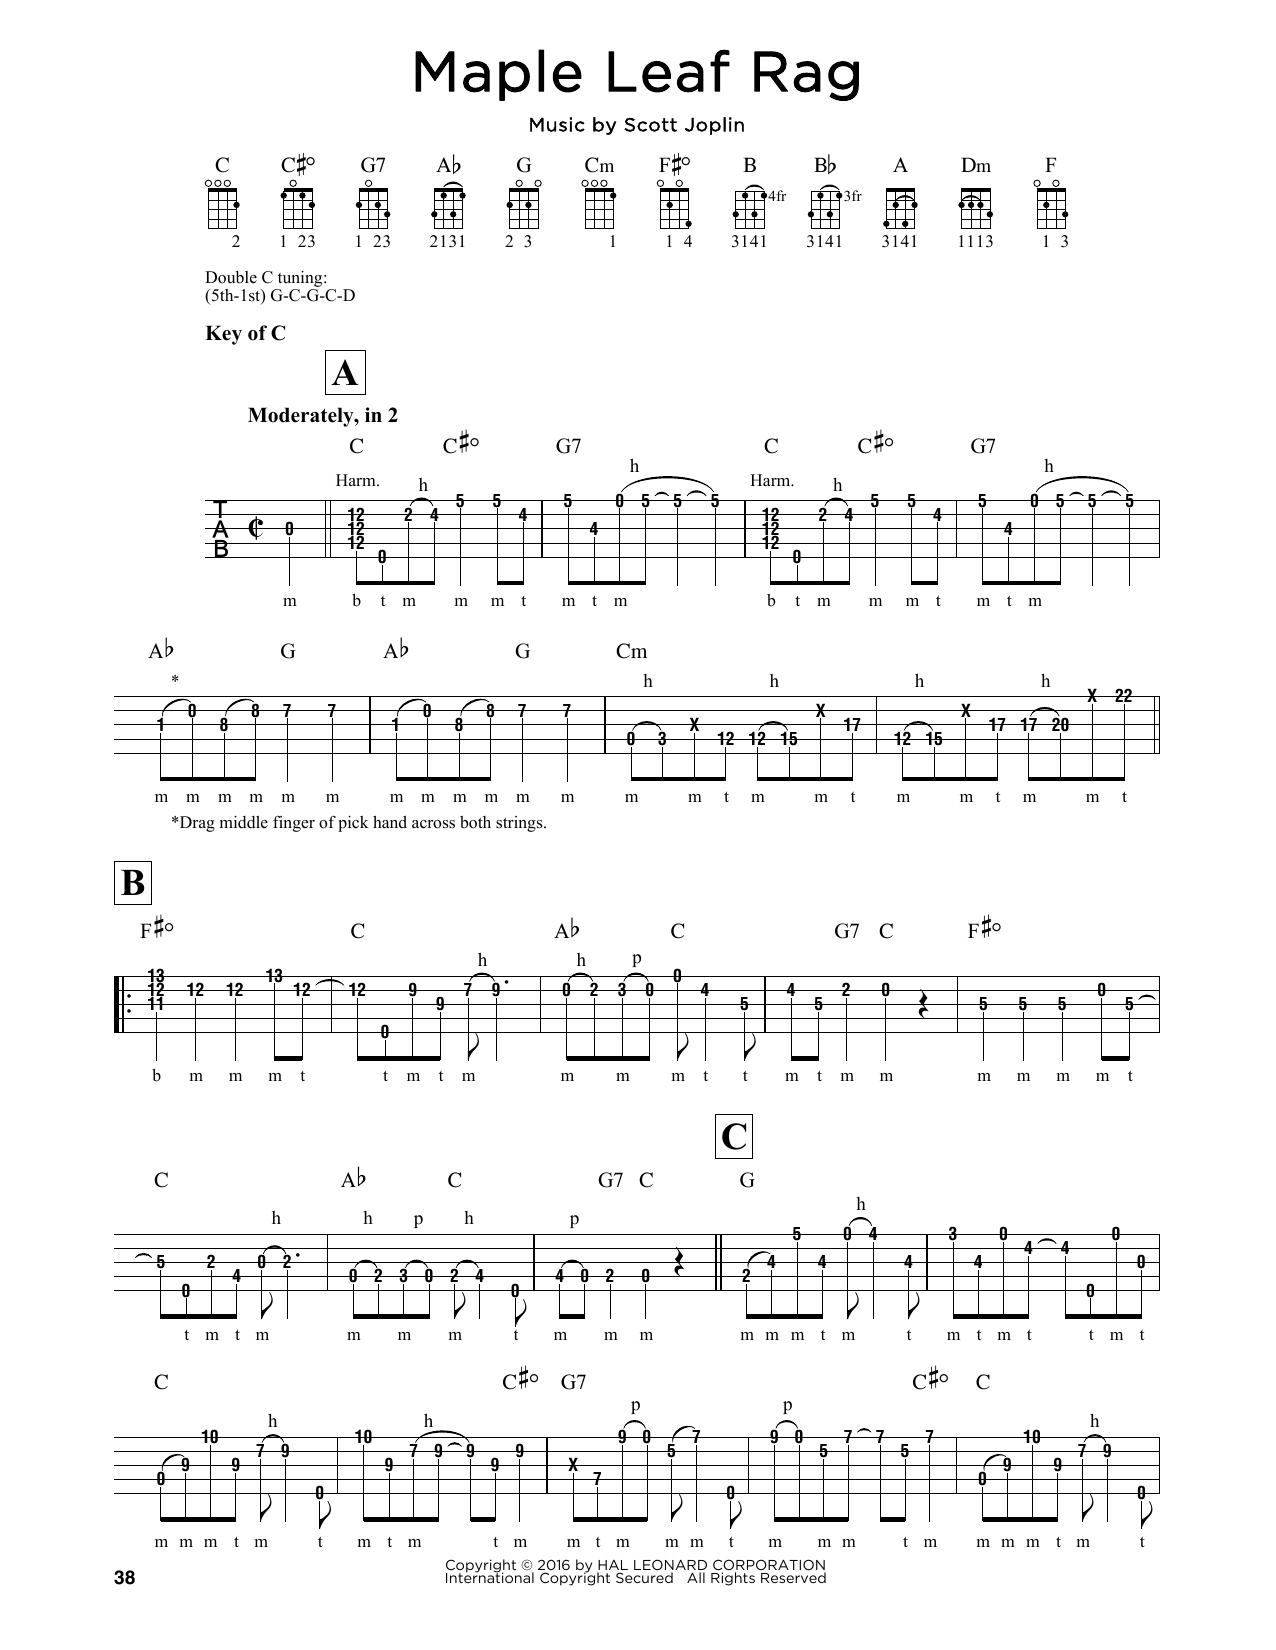 Jule Styne Maple Leaf Rag Sheet Music Notes & Chords for Banjo - Download or Print PDF